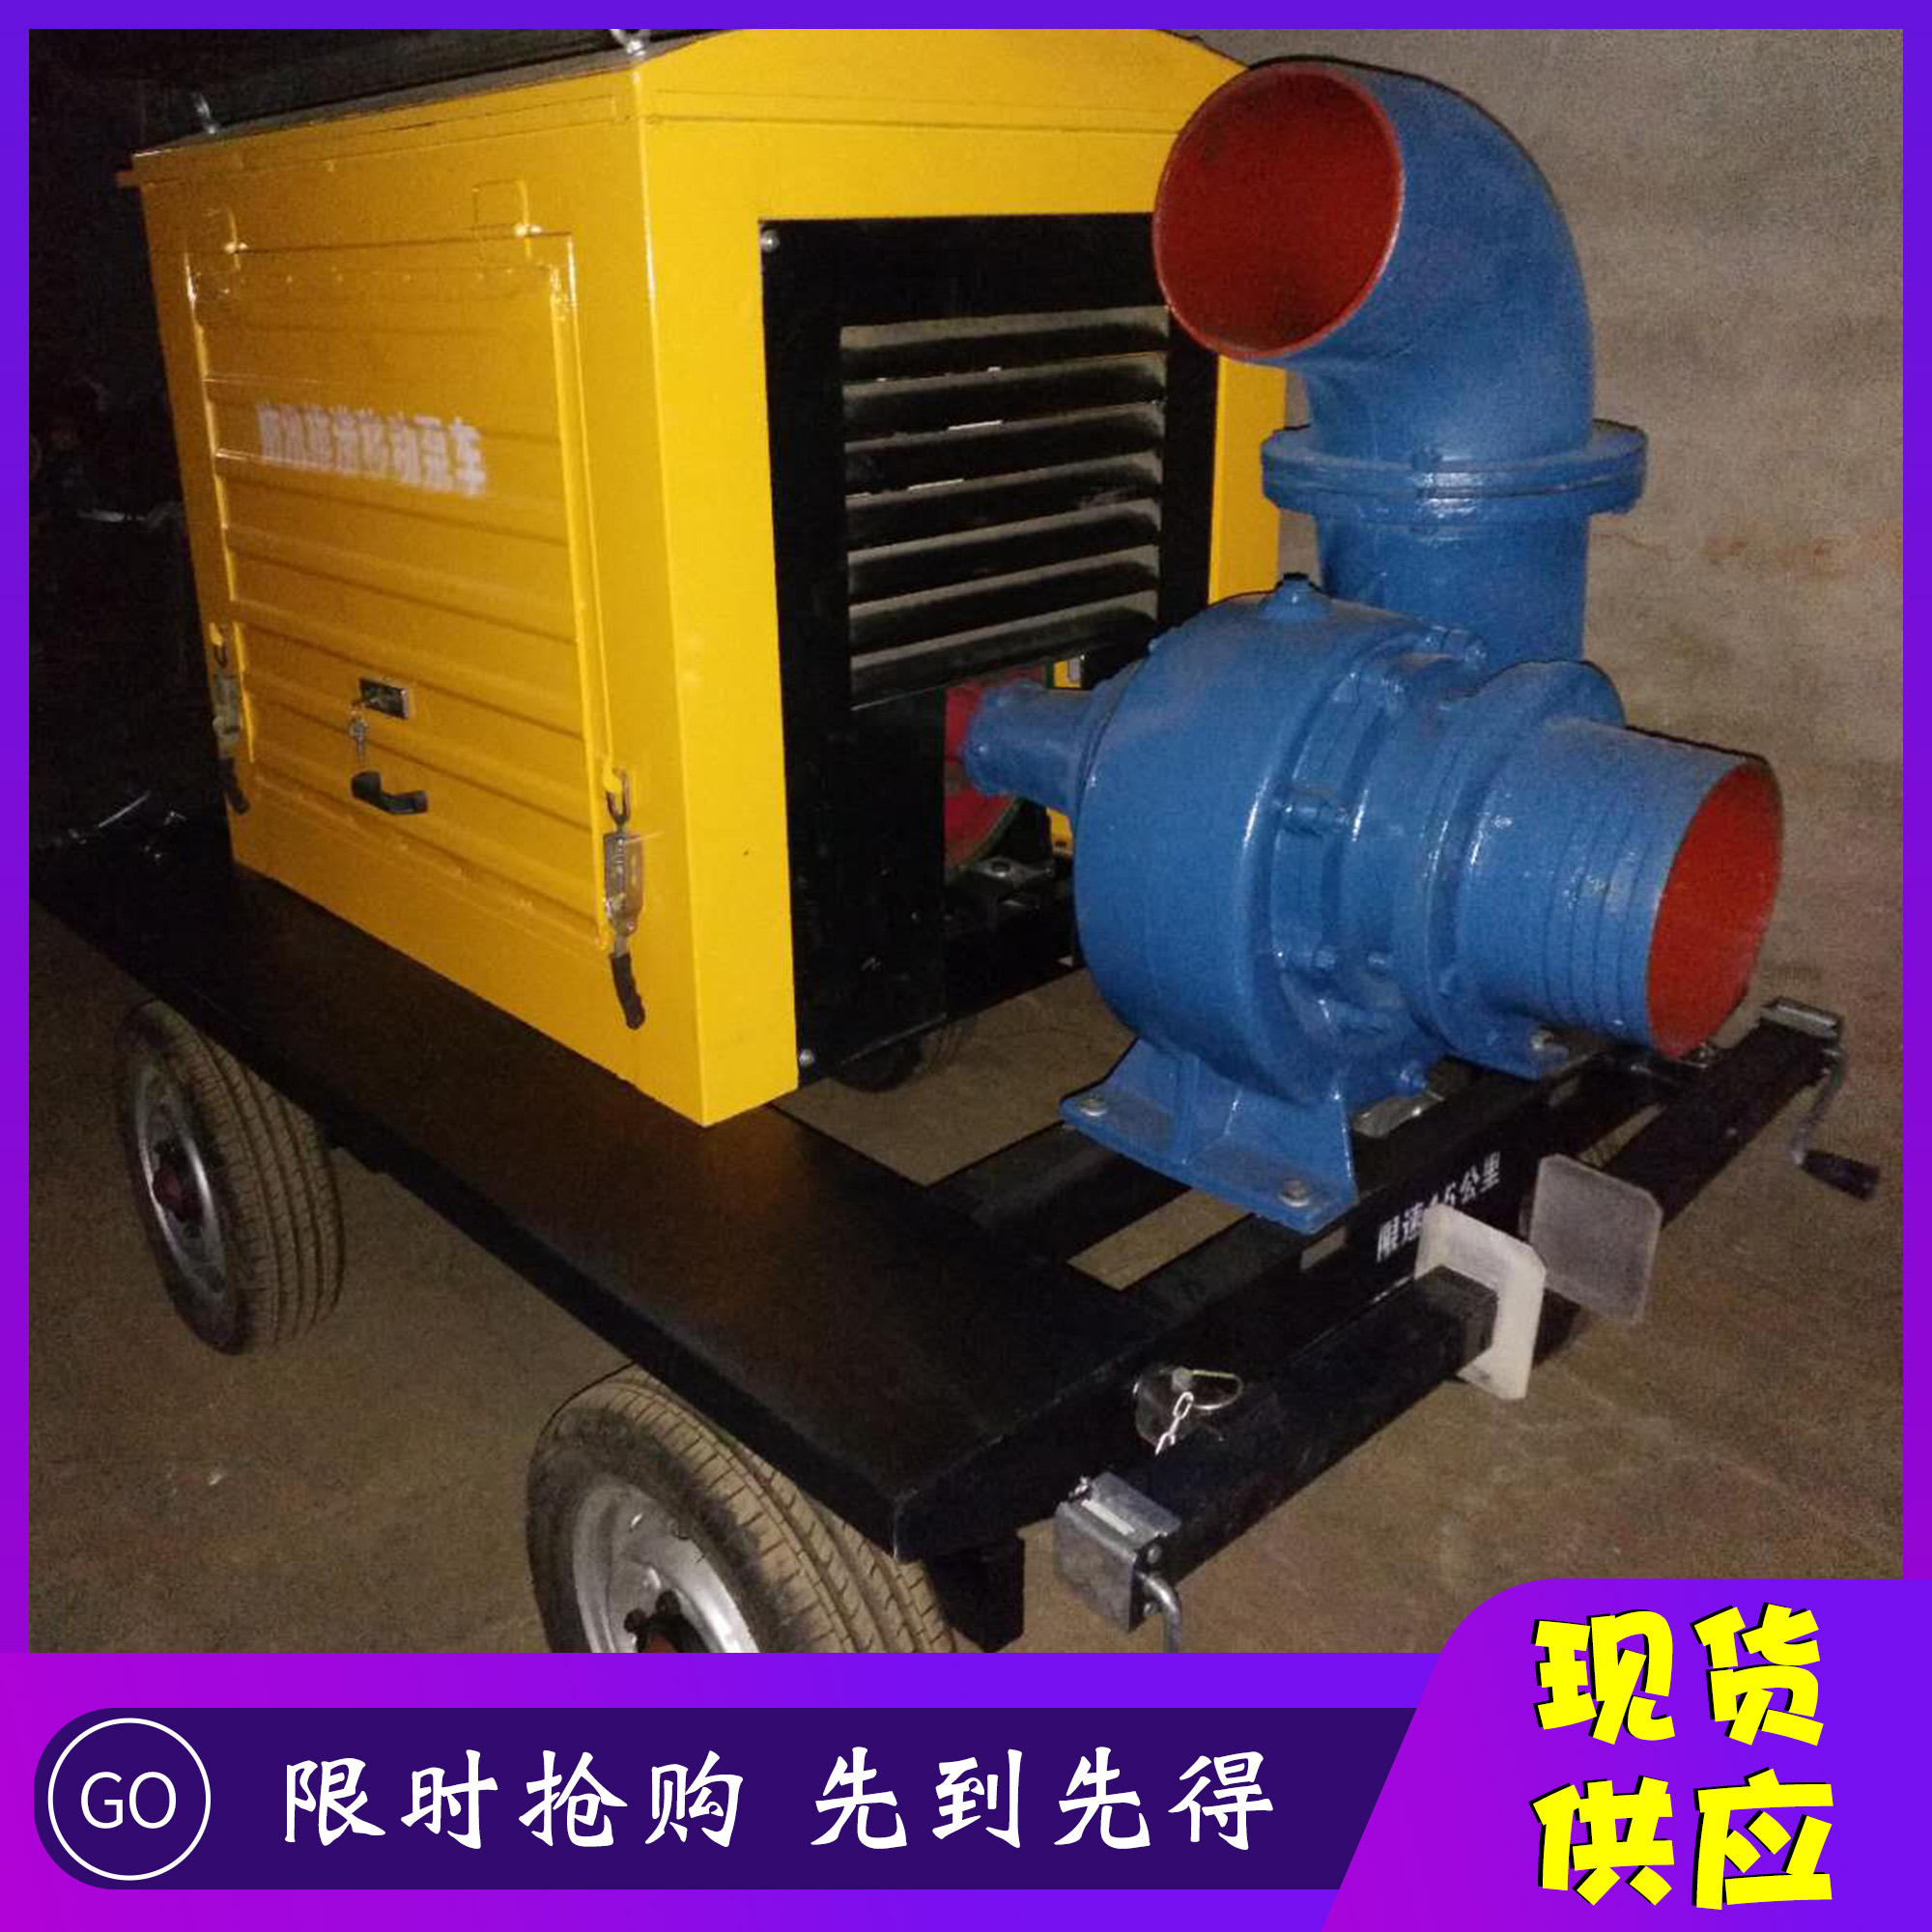 安徽省亳州市柴油机驱动排涝泵设备